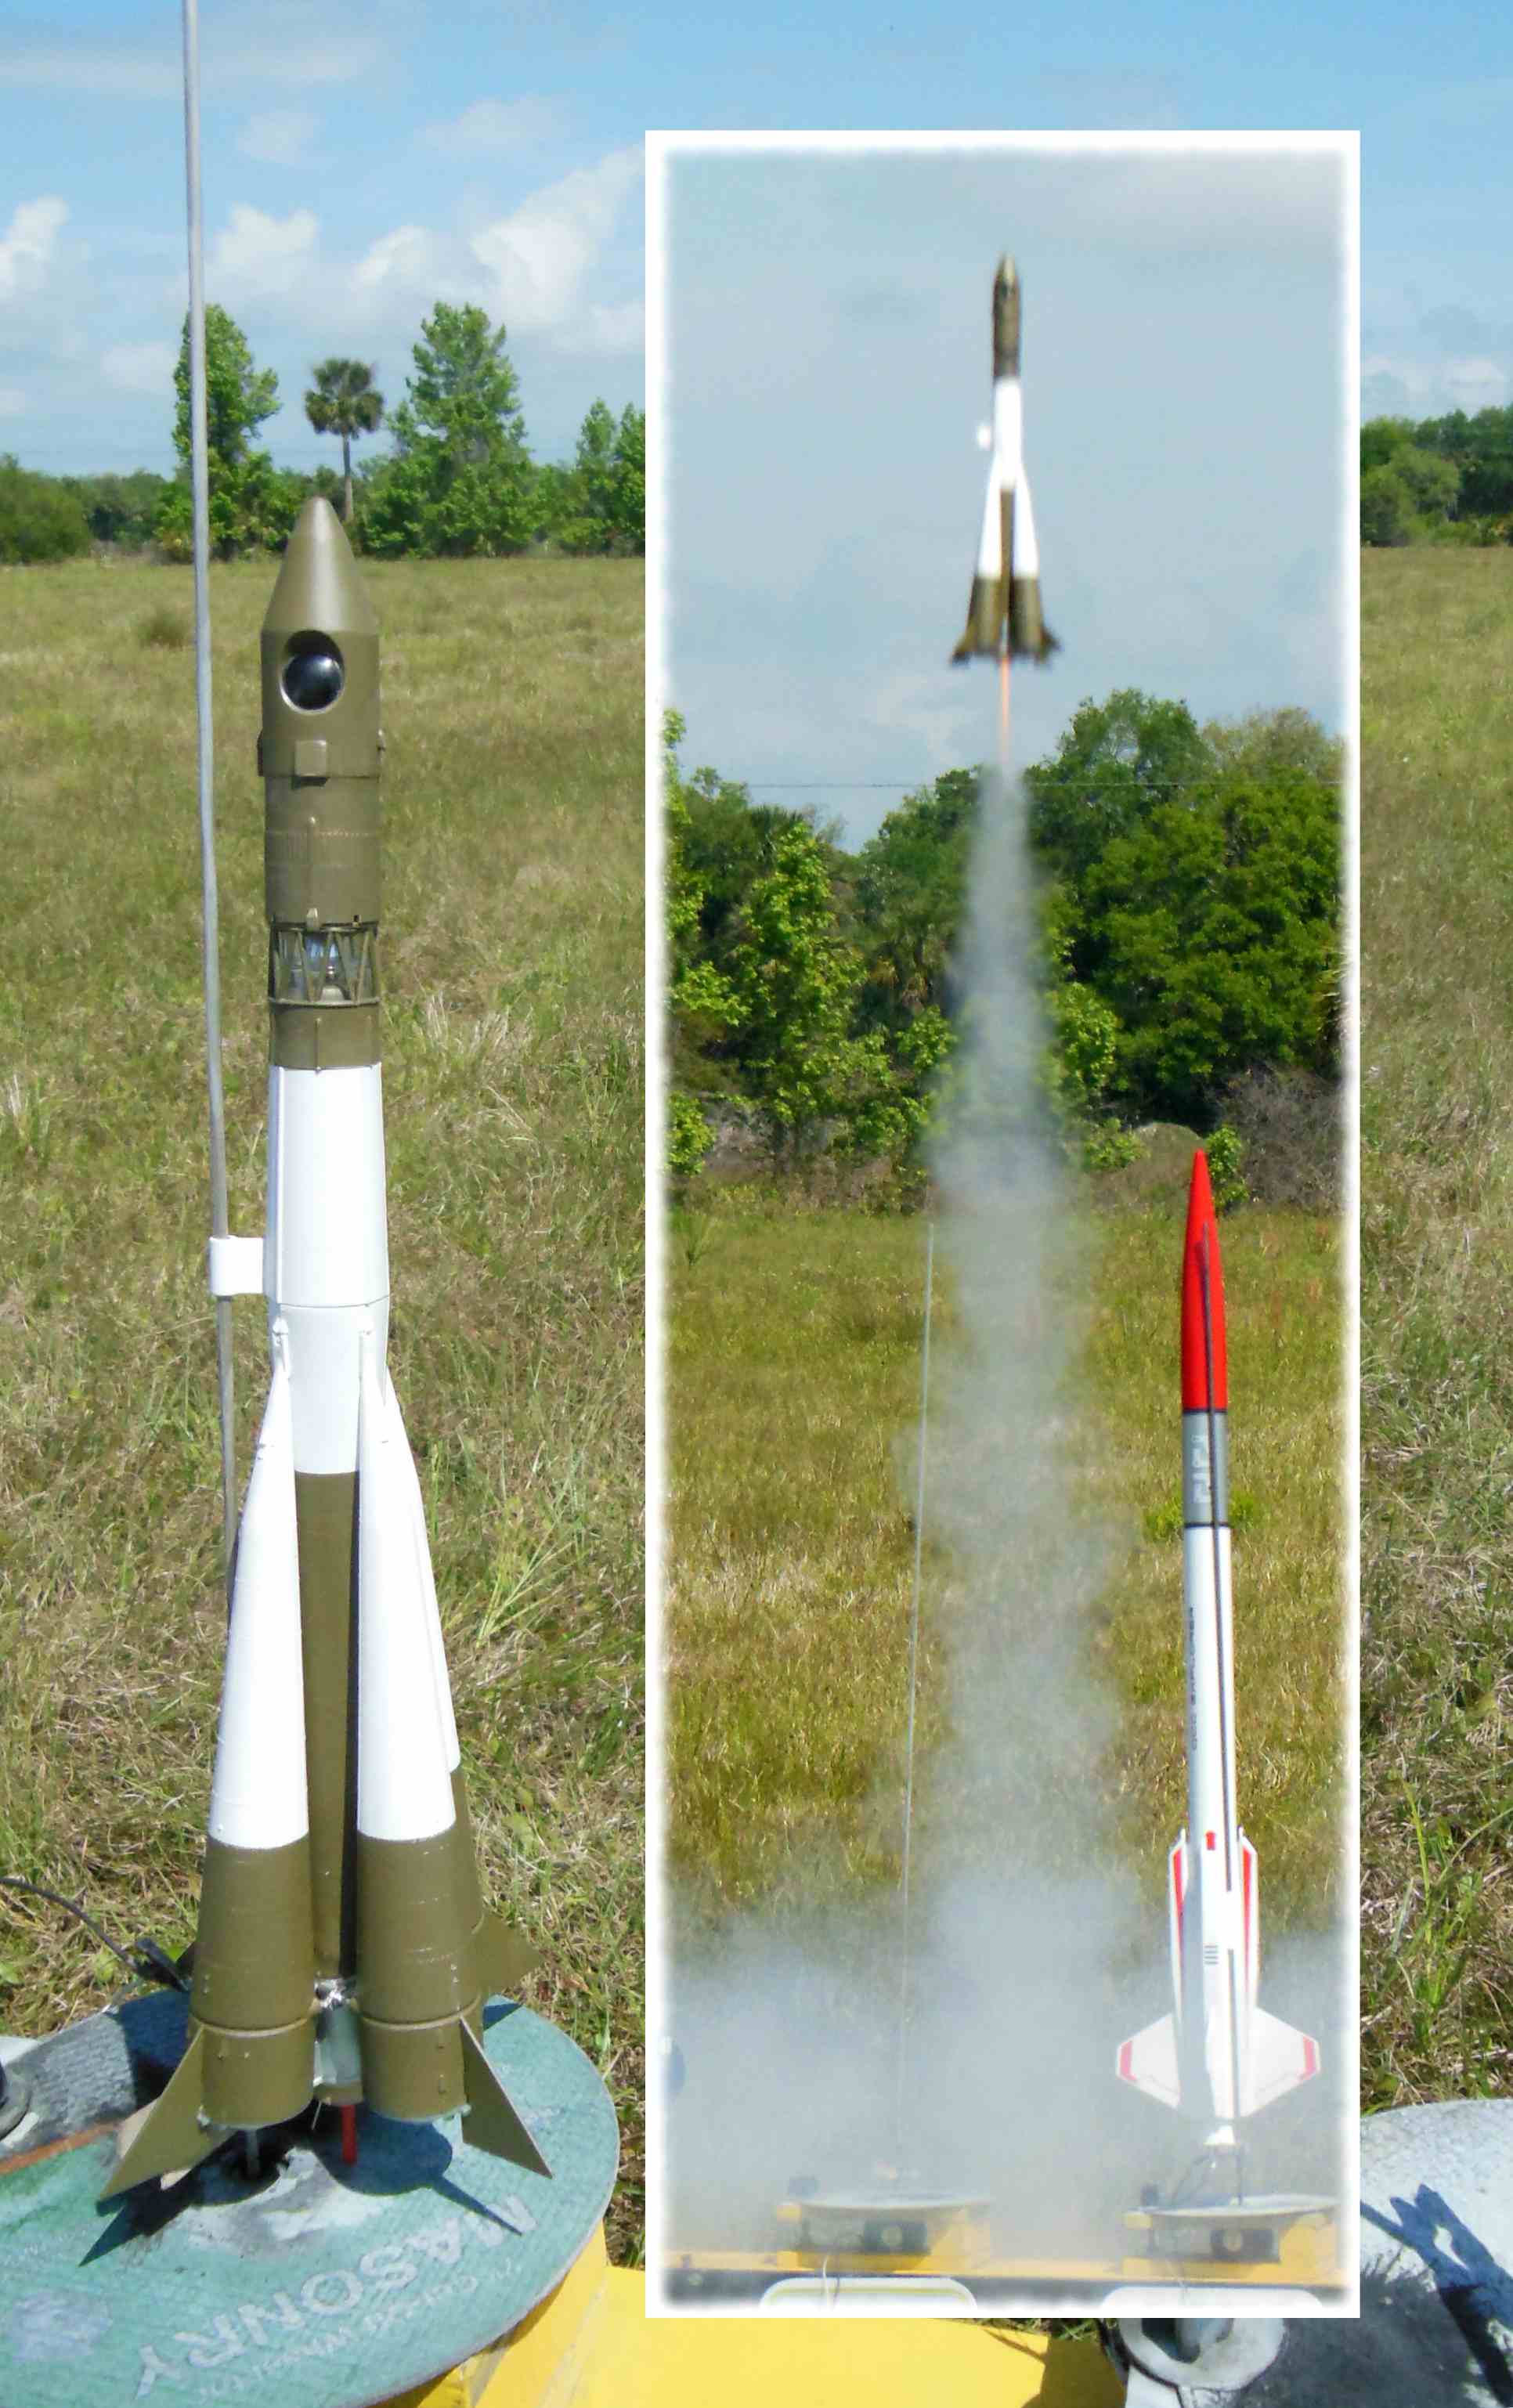 vostok rocket model flying